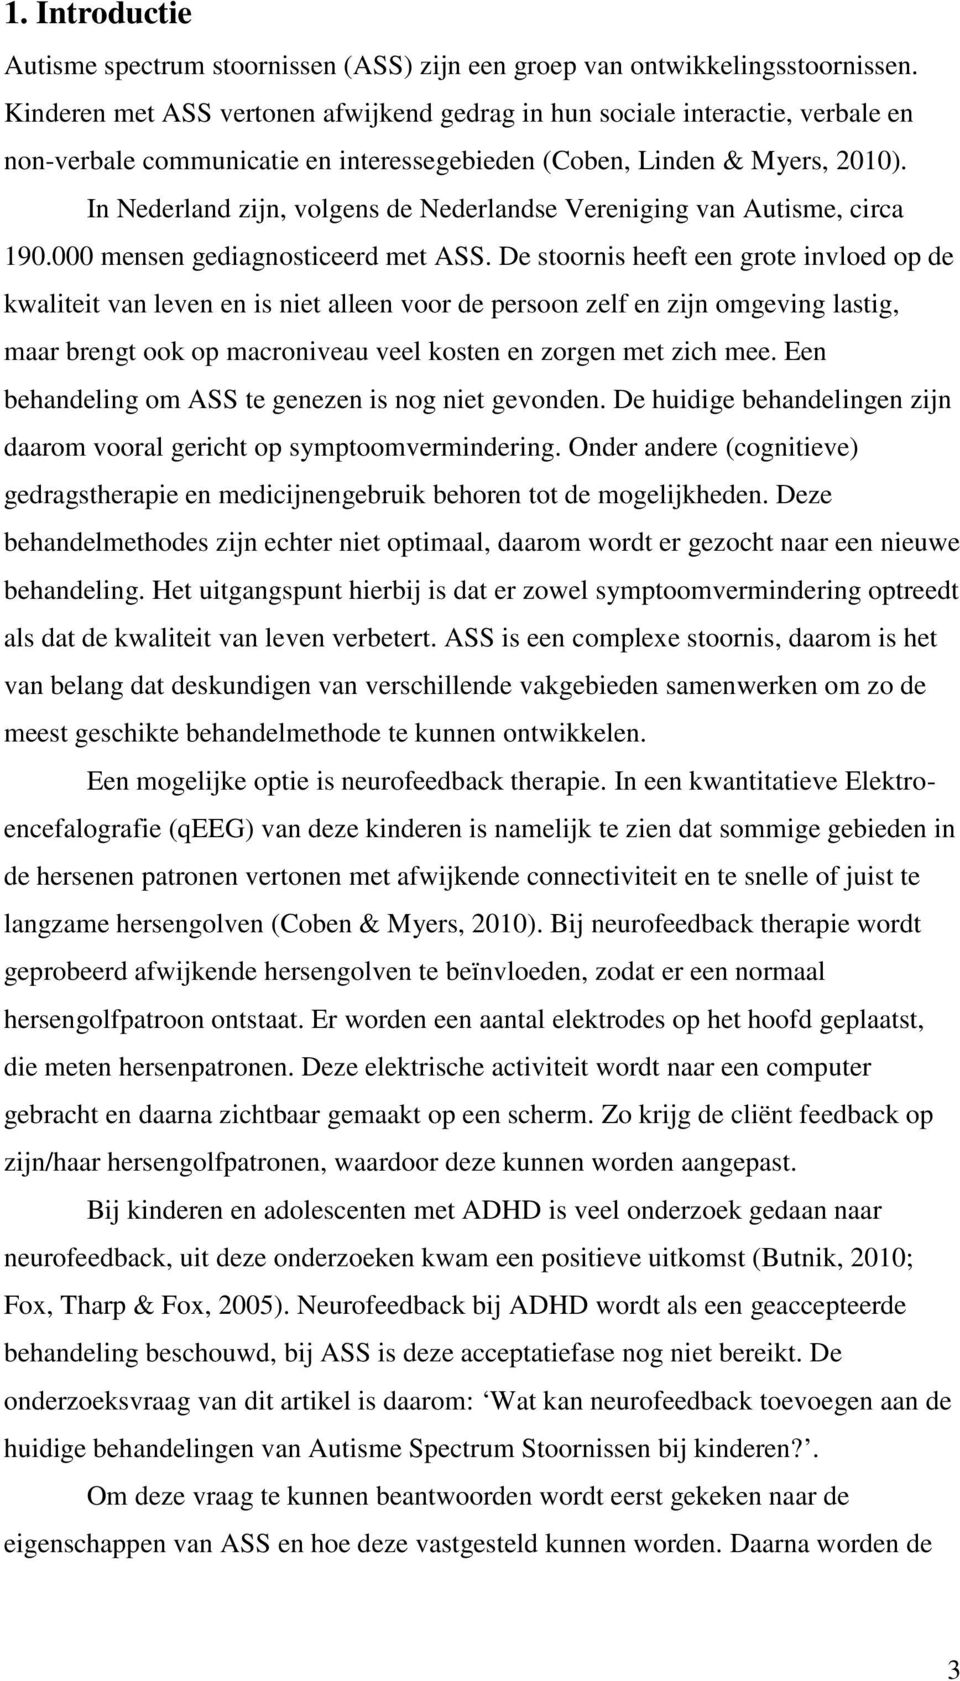 In Nederland zijn, volgens de Nederlandse Vereniging van Autisme, circa 190.000 mensen gediagnosticeerd met ASS.